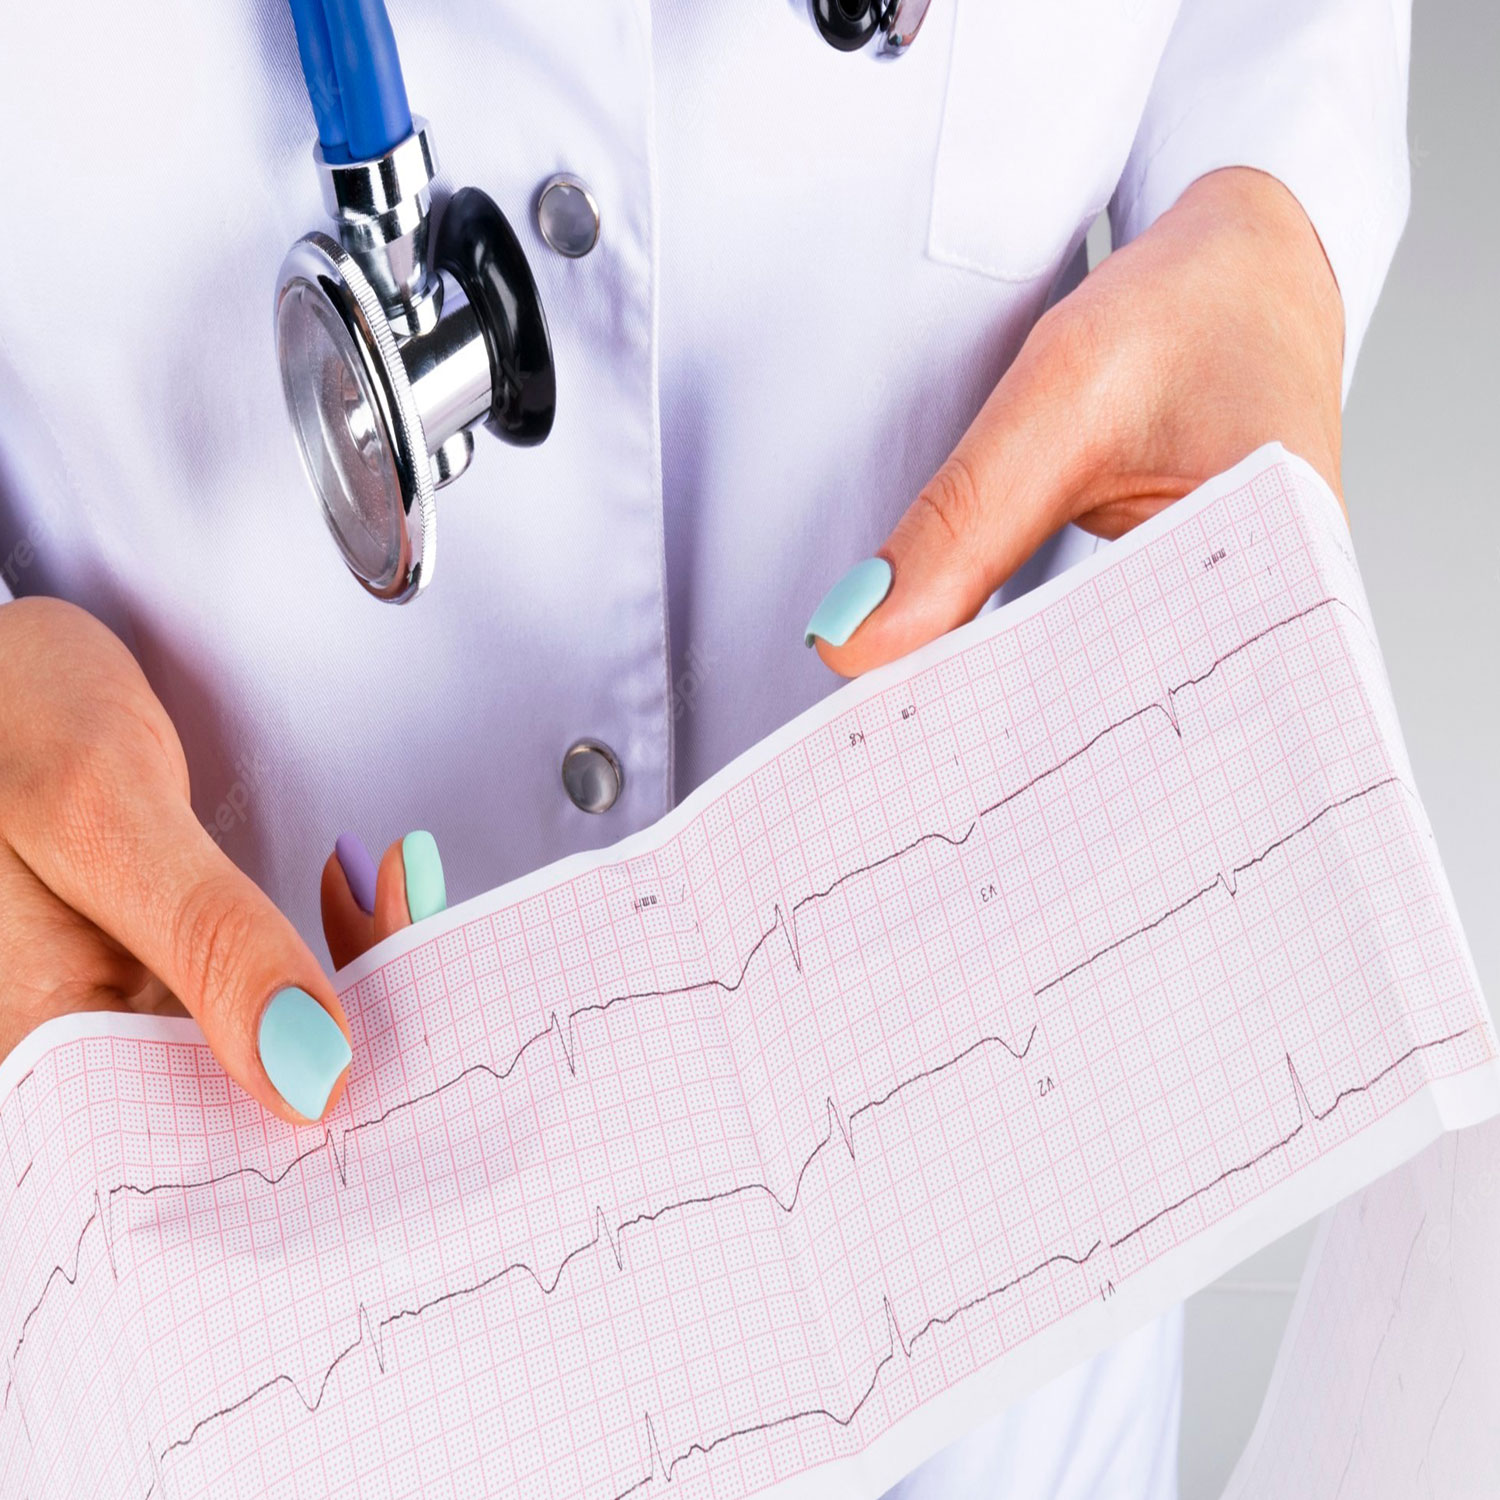 بررسی تست نوار قلب برای تشخیص عوارض قلبی توسط پزشک